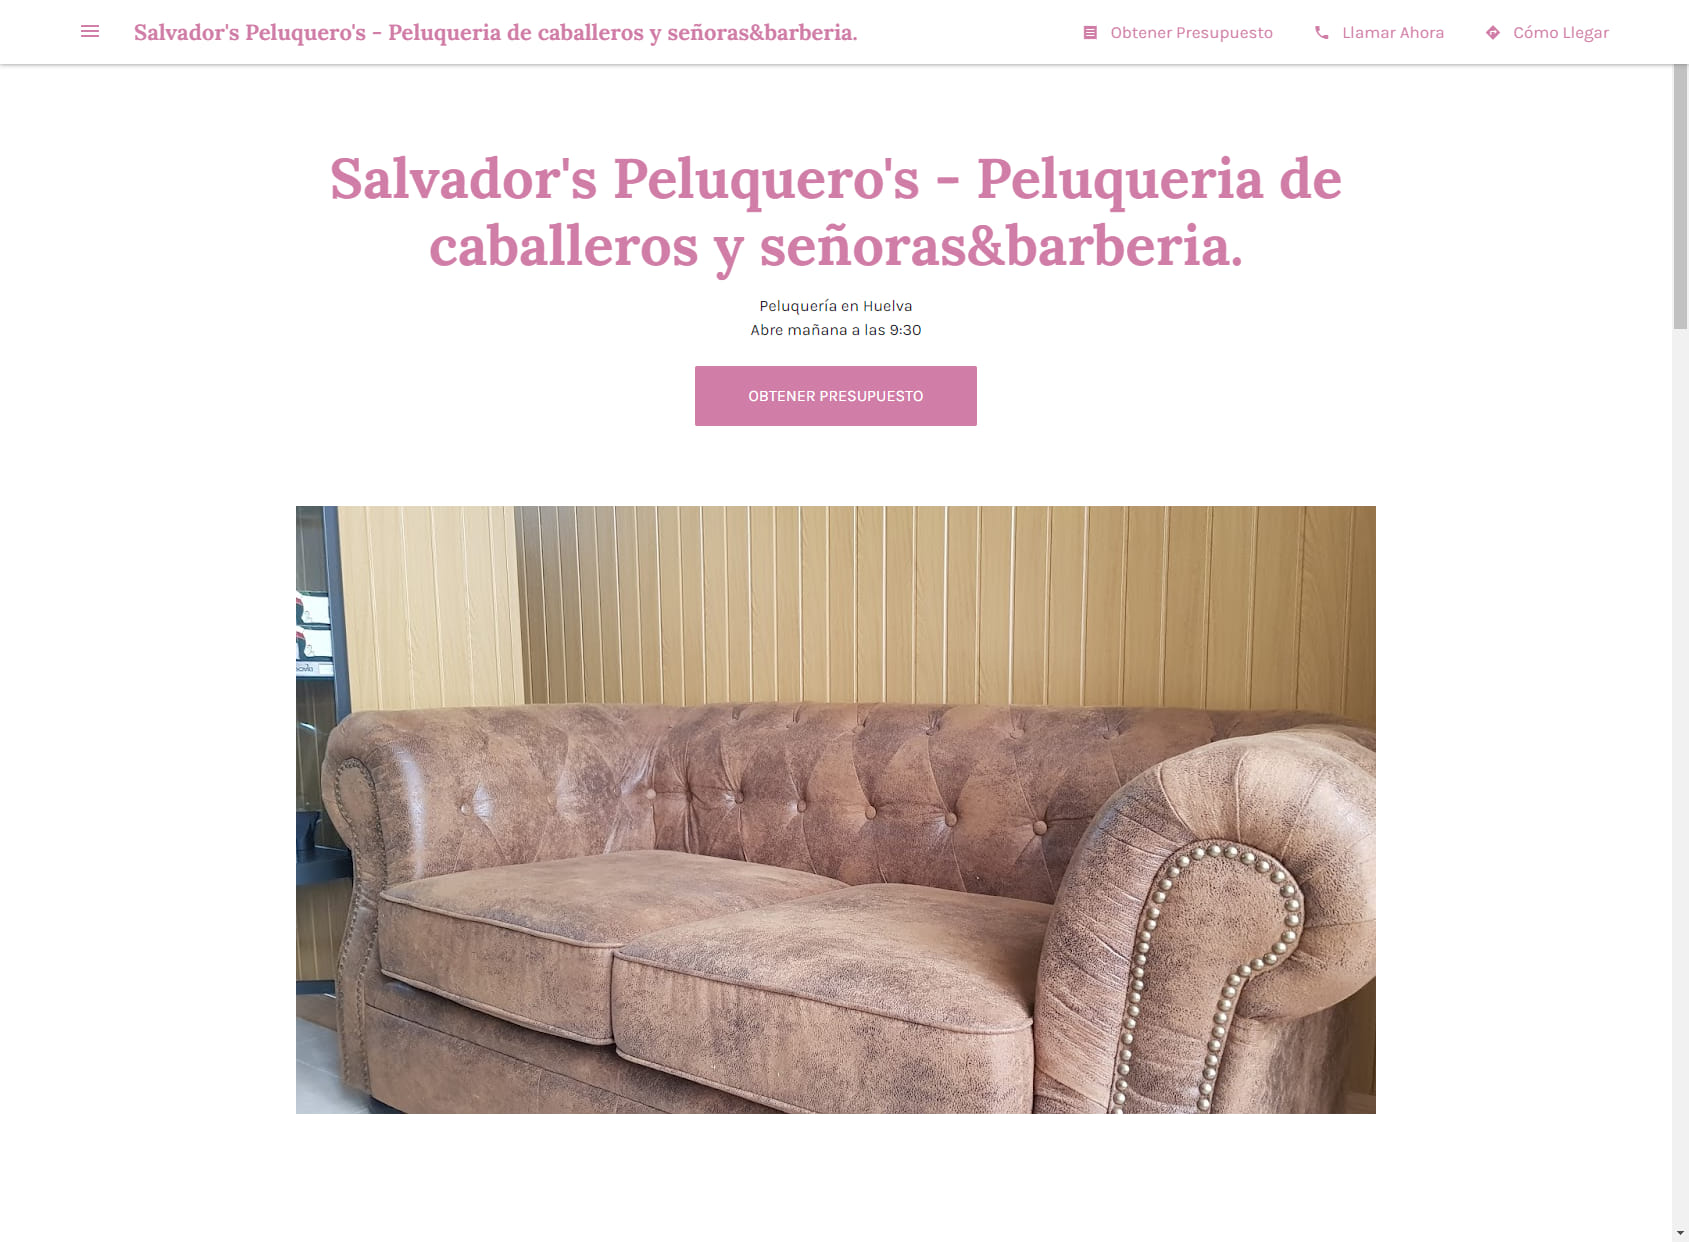 Salvador's Peluquero's - Peluqueria de caballeros y señoras&barberia.